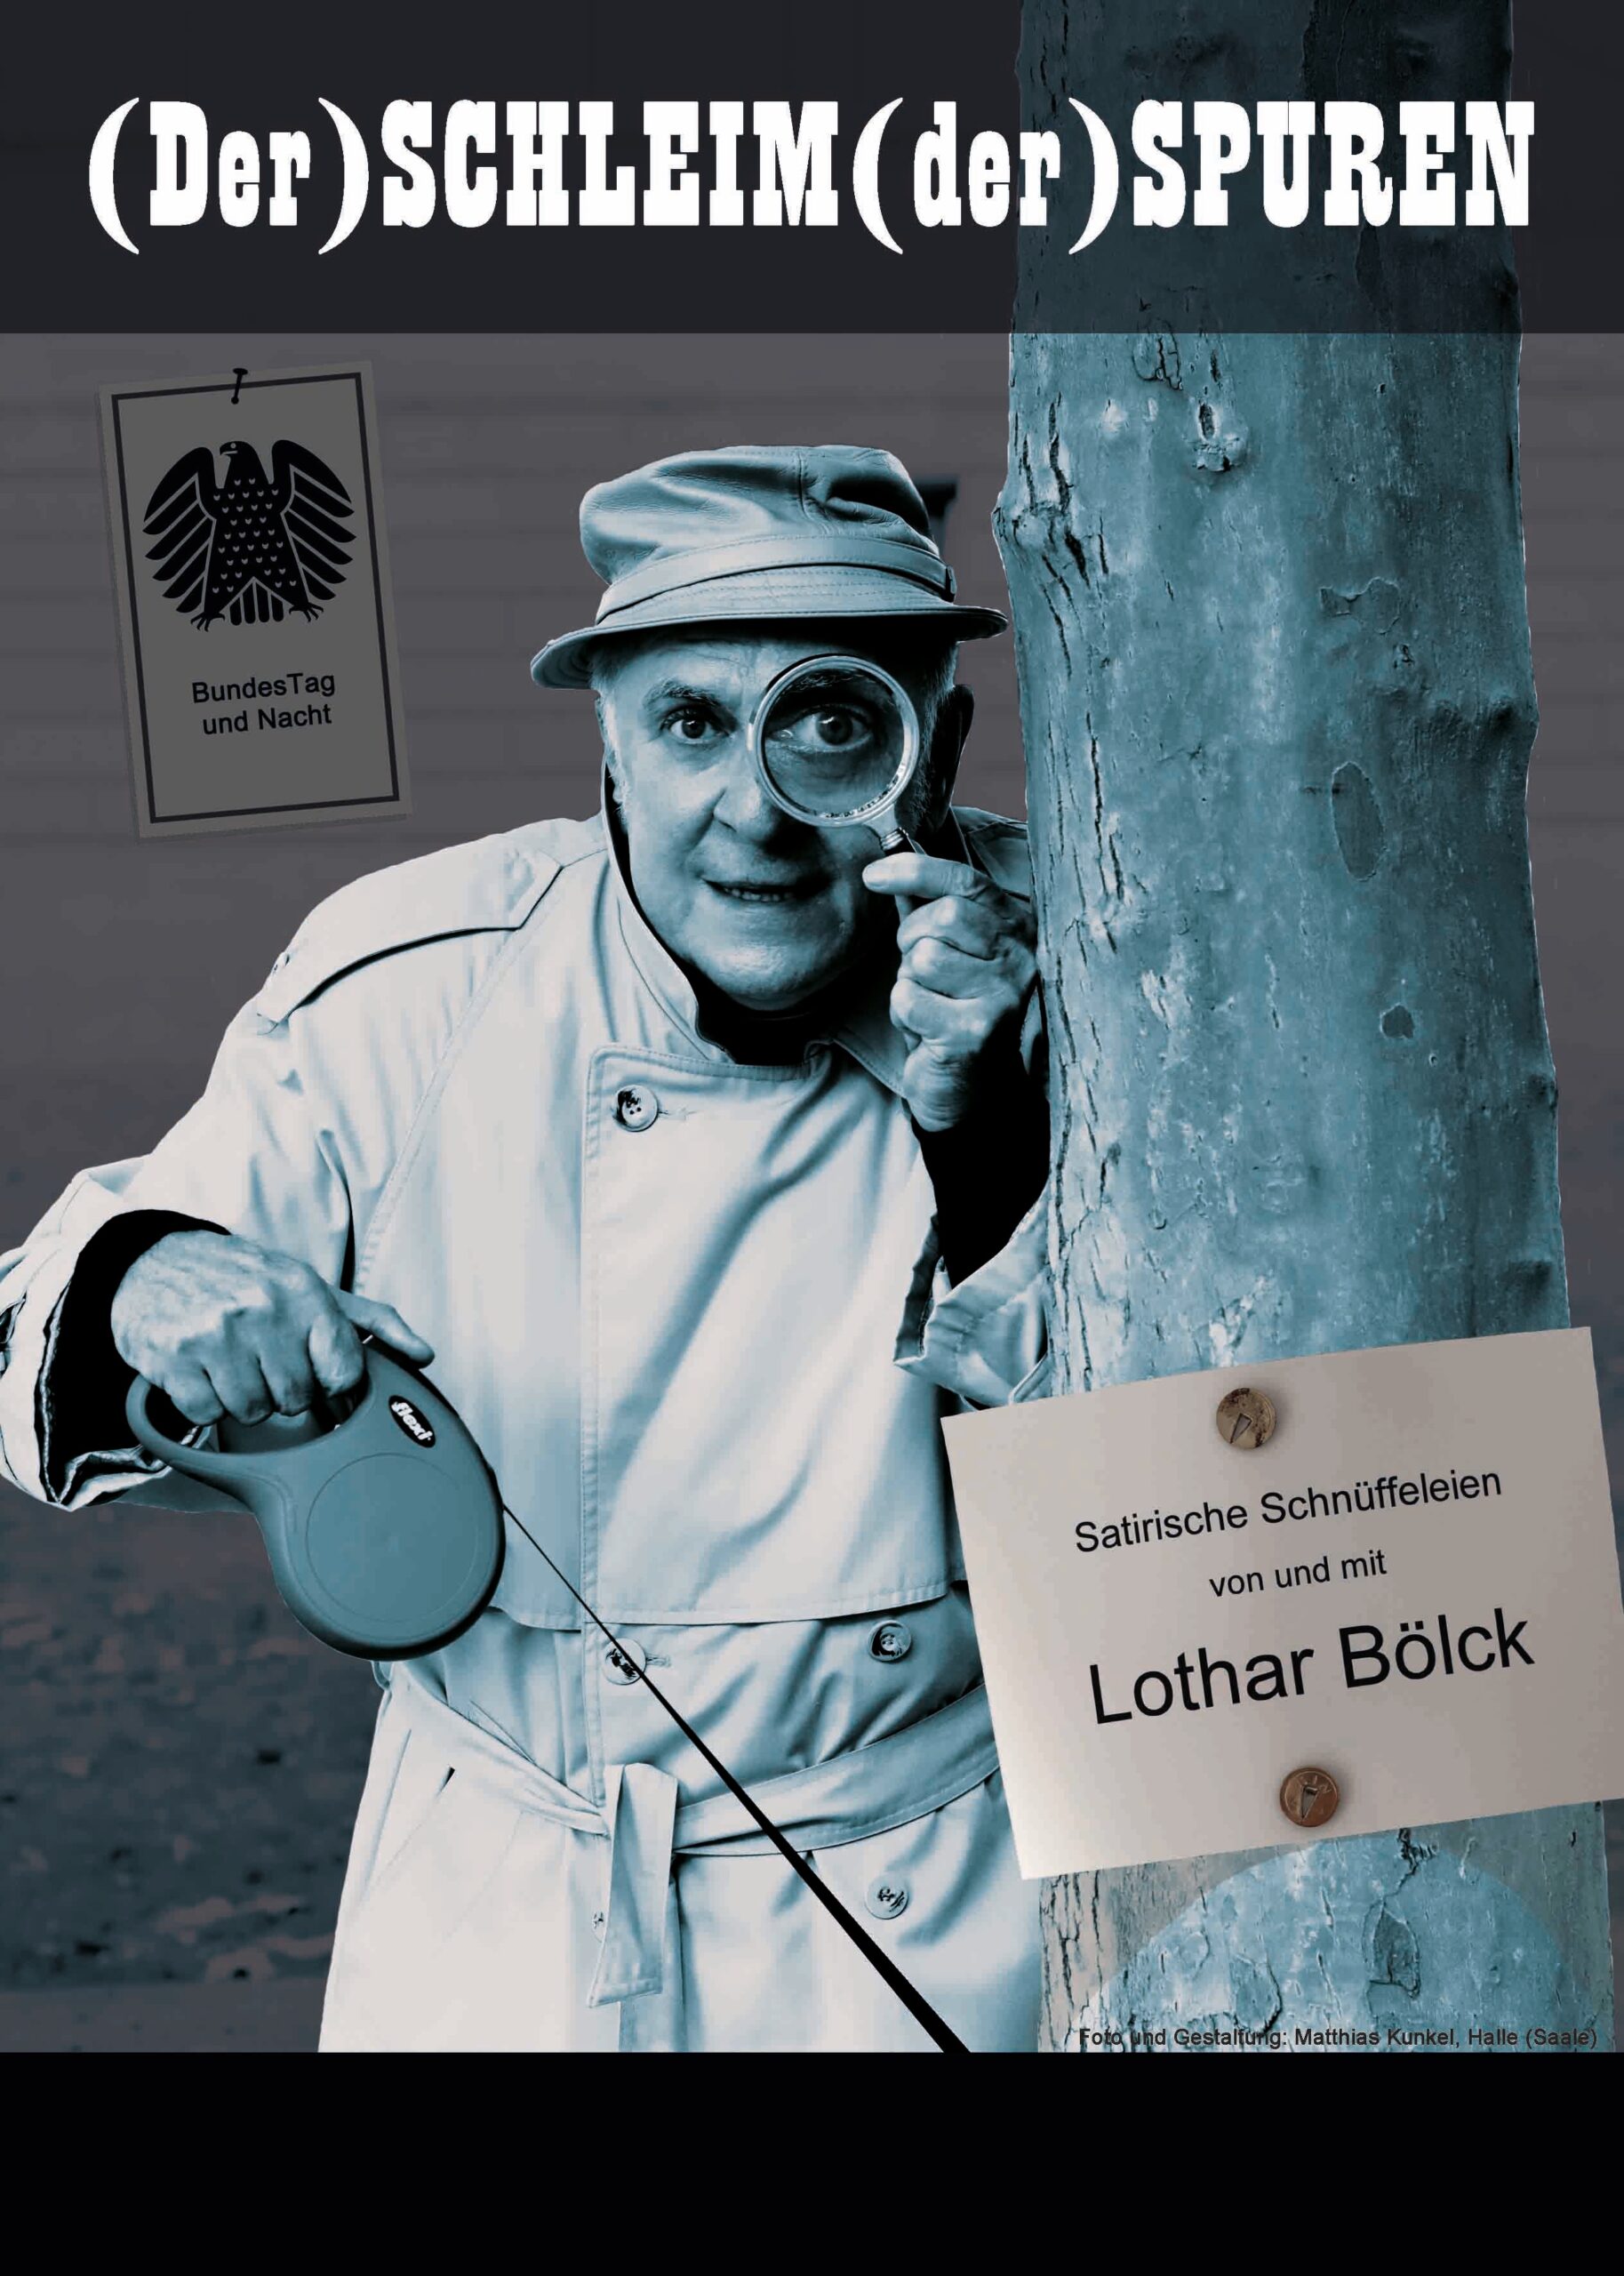 Kabarett mit Lothar Bölck